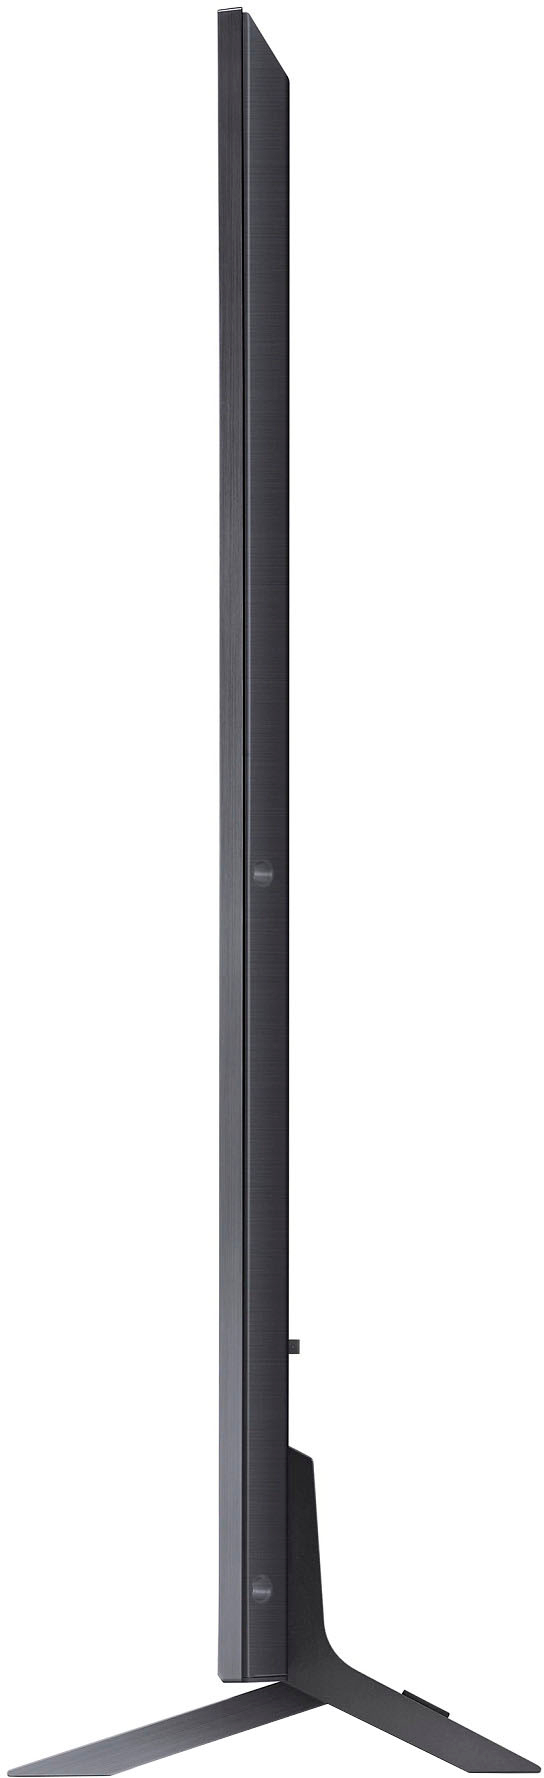 LG QNED85 75 Class HDR 4K UHD Smart QNED Mini-LED TV